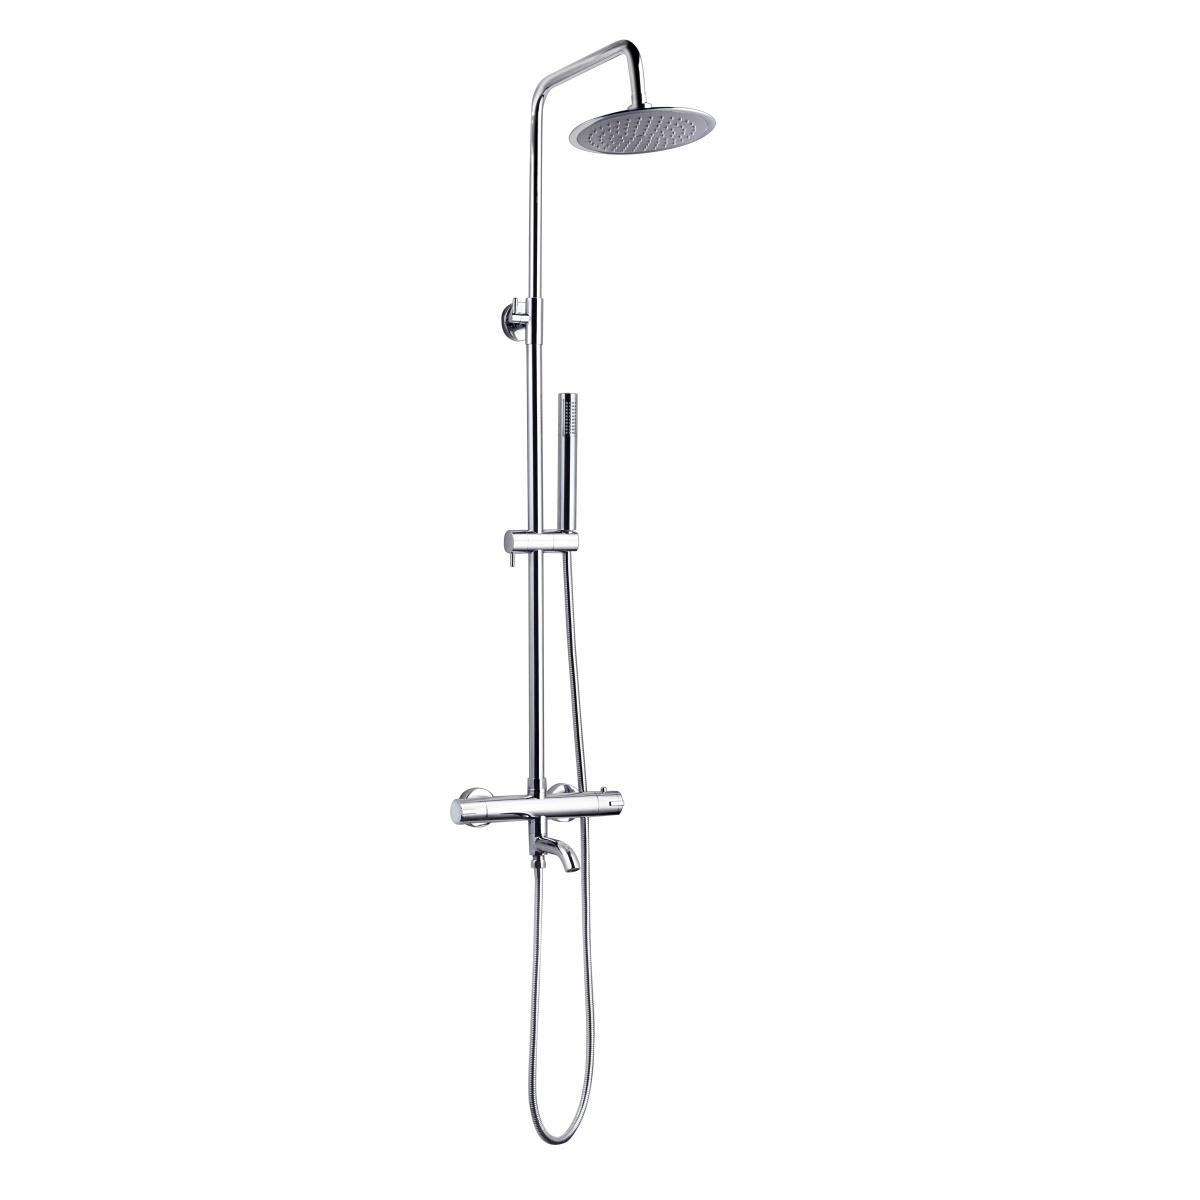 YS34222 Coluna de duche com bica, coluna de duche de efeito chuva termostática, regulável em altura;